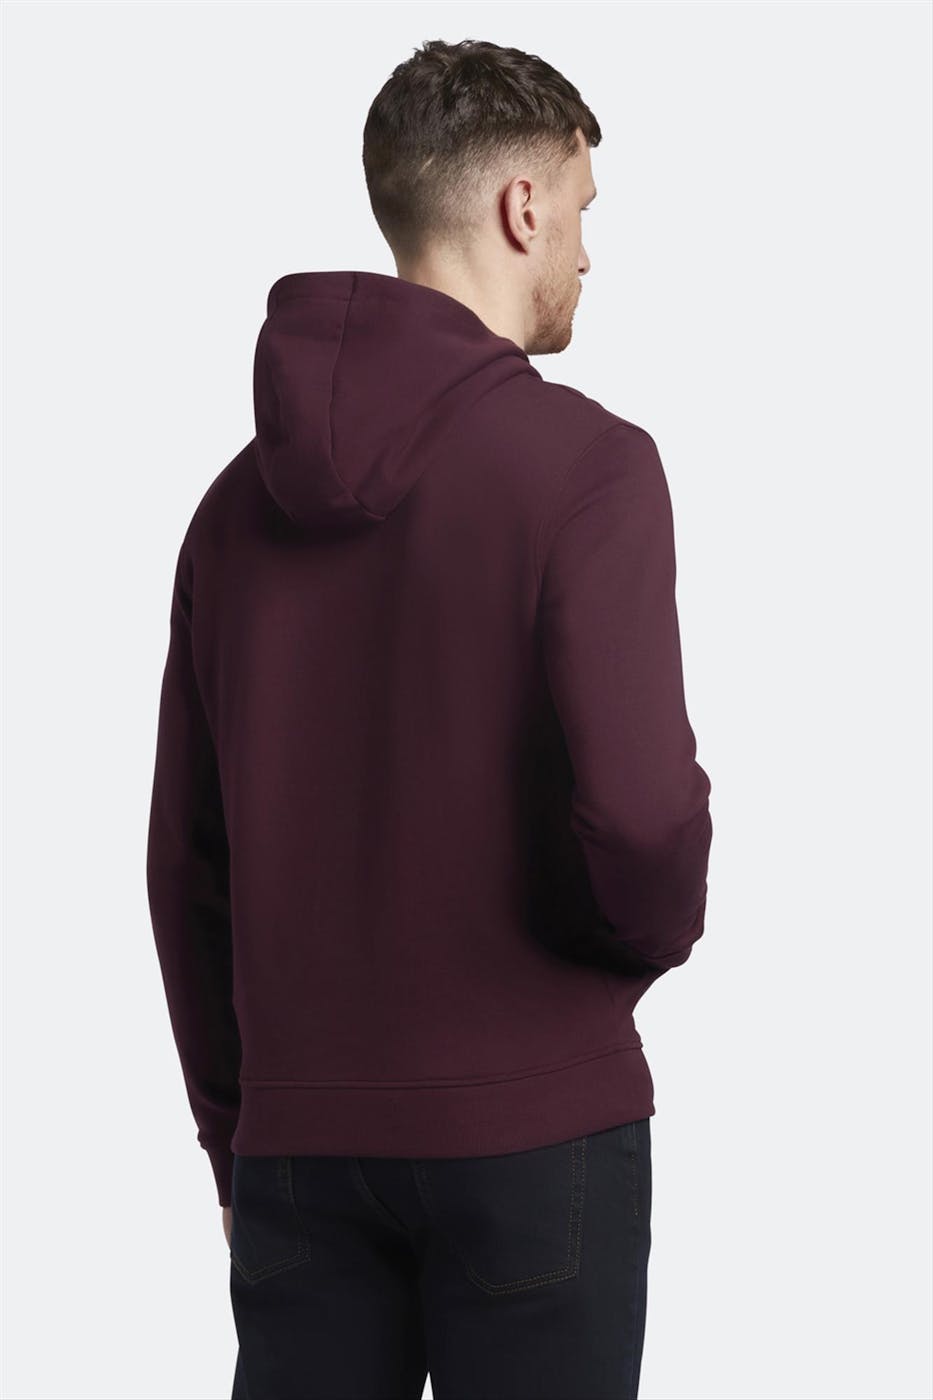 Lyle & Scott - Bordeaux Pullover hoodie